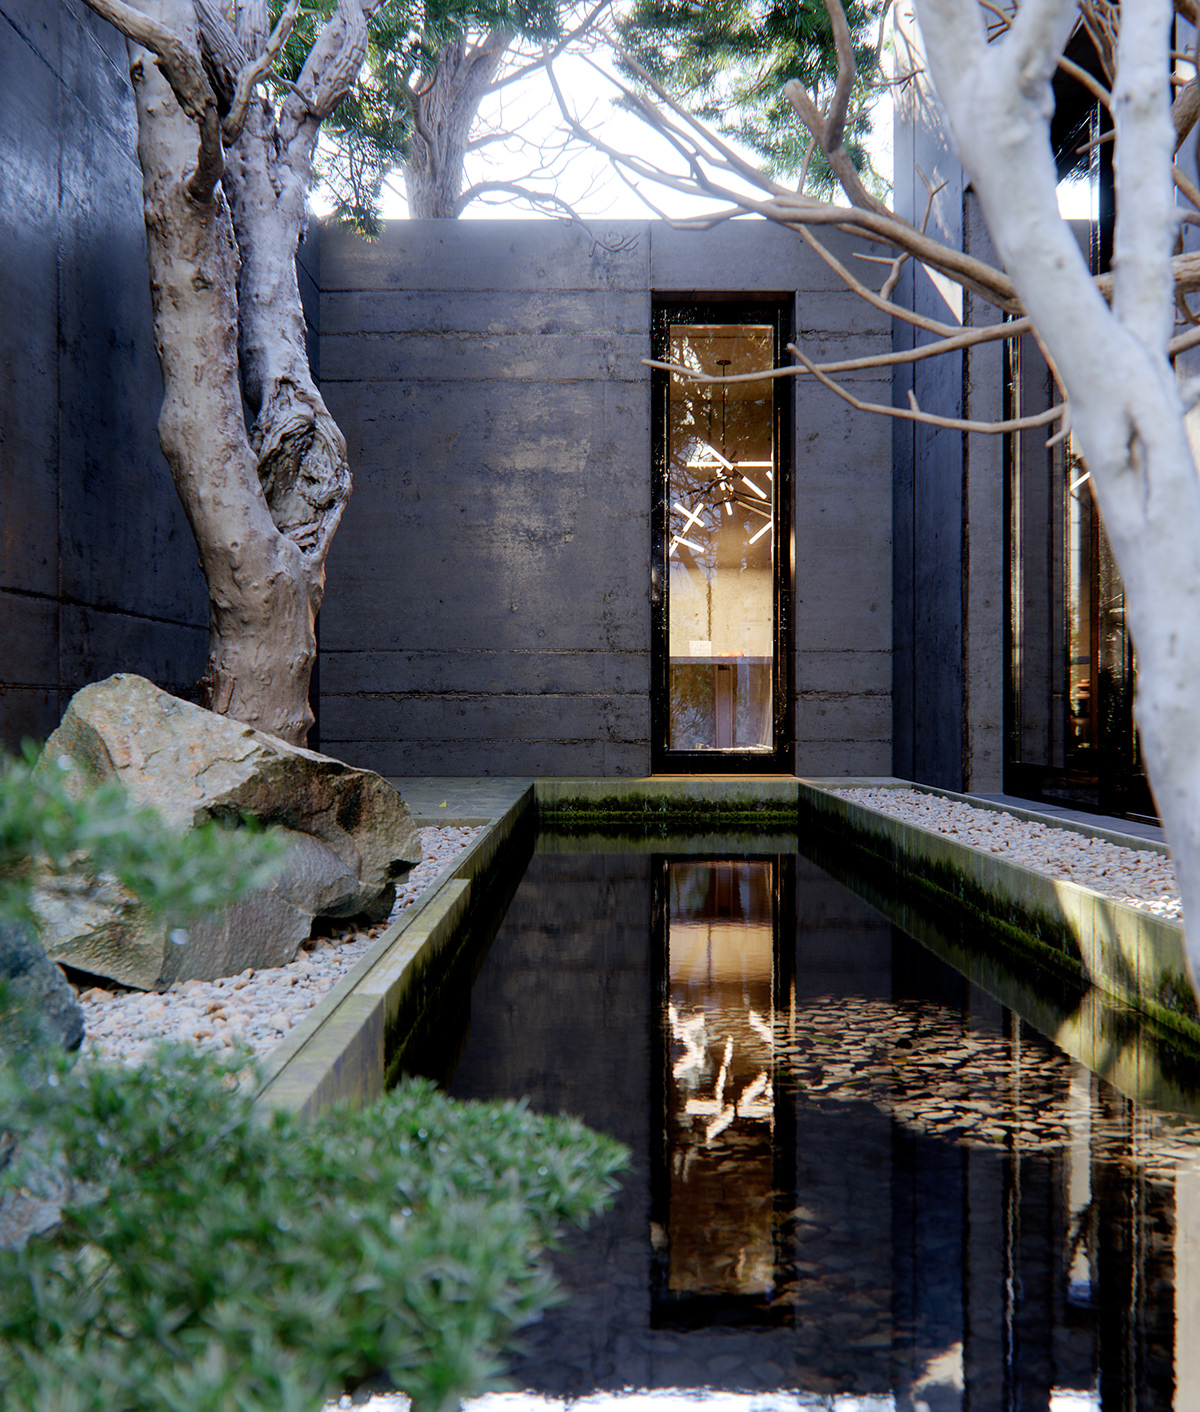 CGI Tadao Ando 3dsmax FStorm Render concrete architecture Photography 